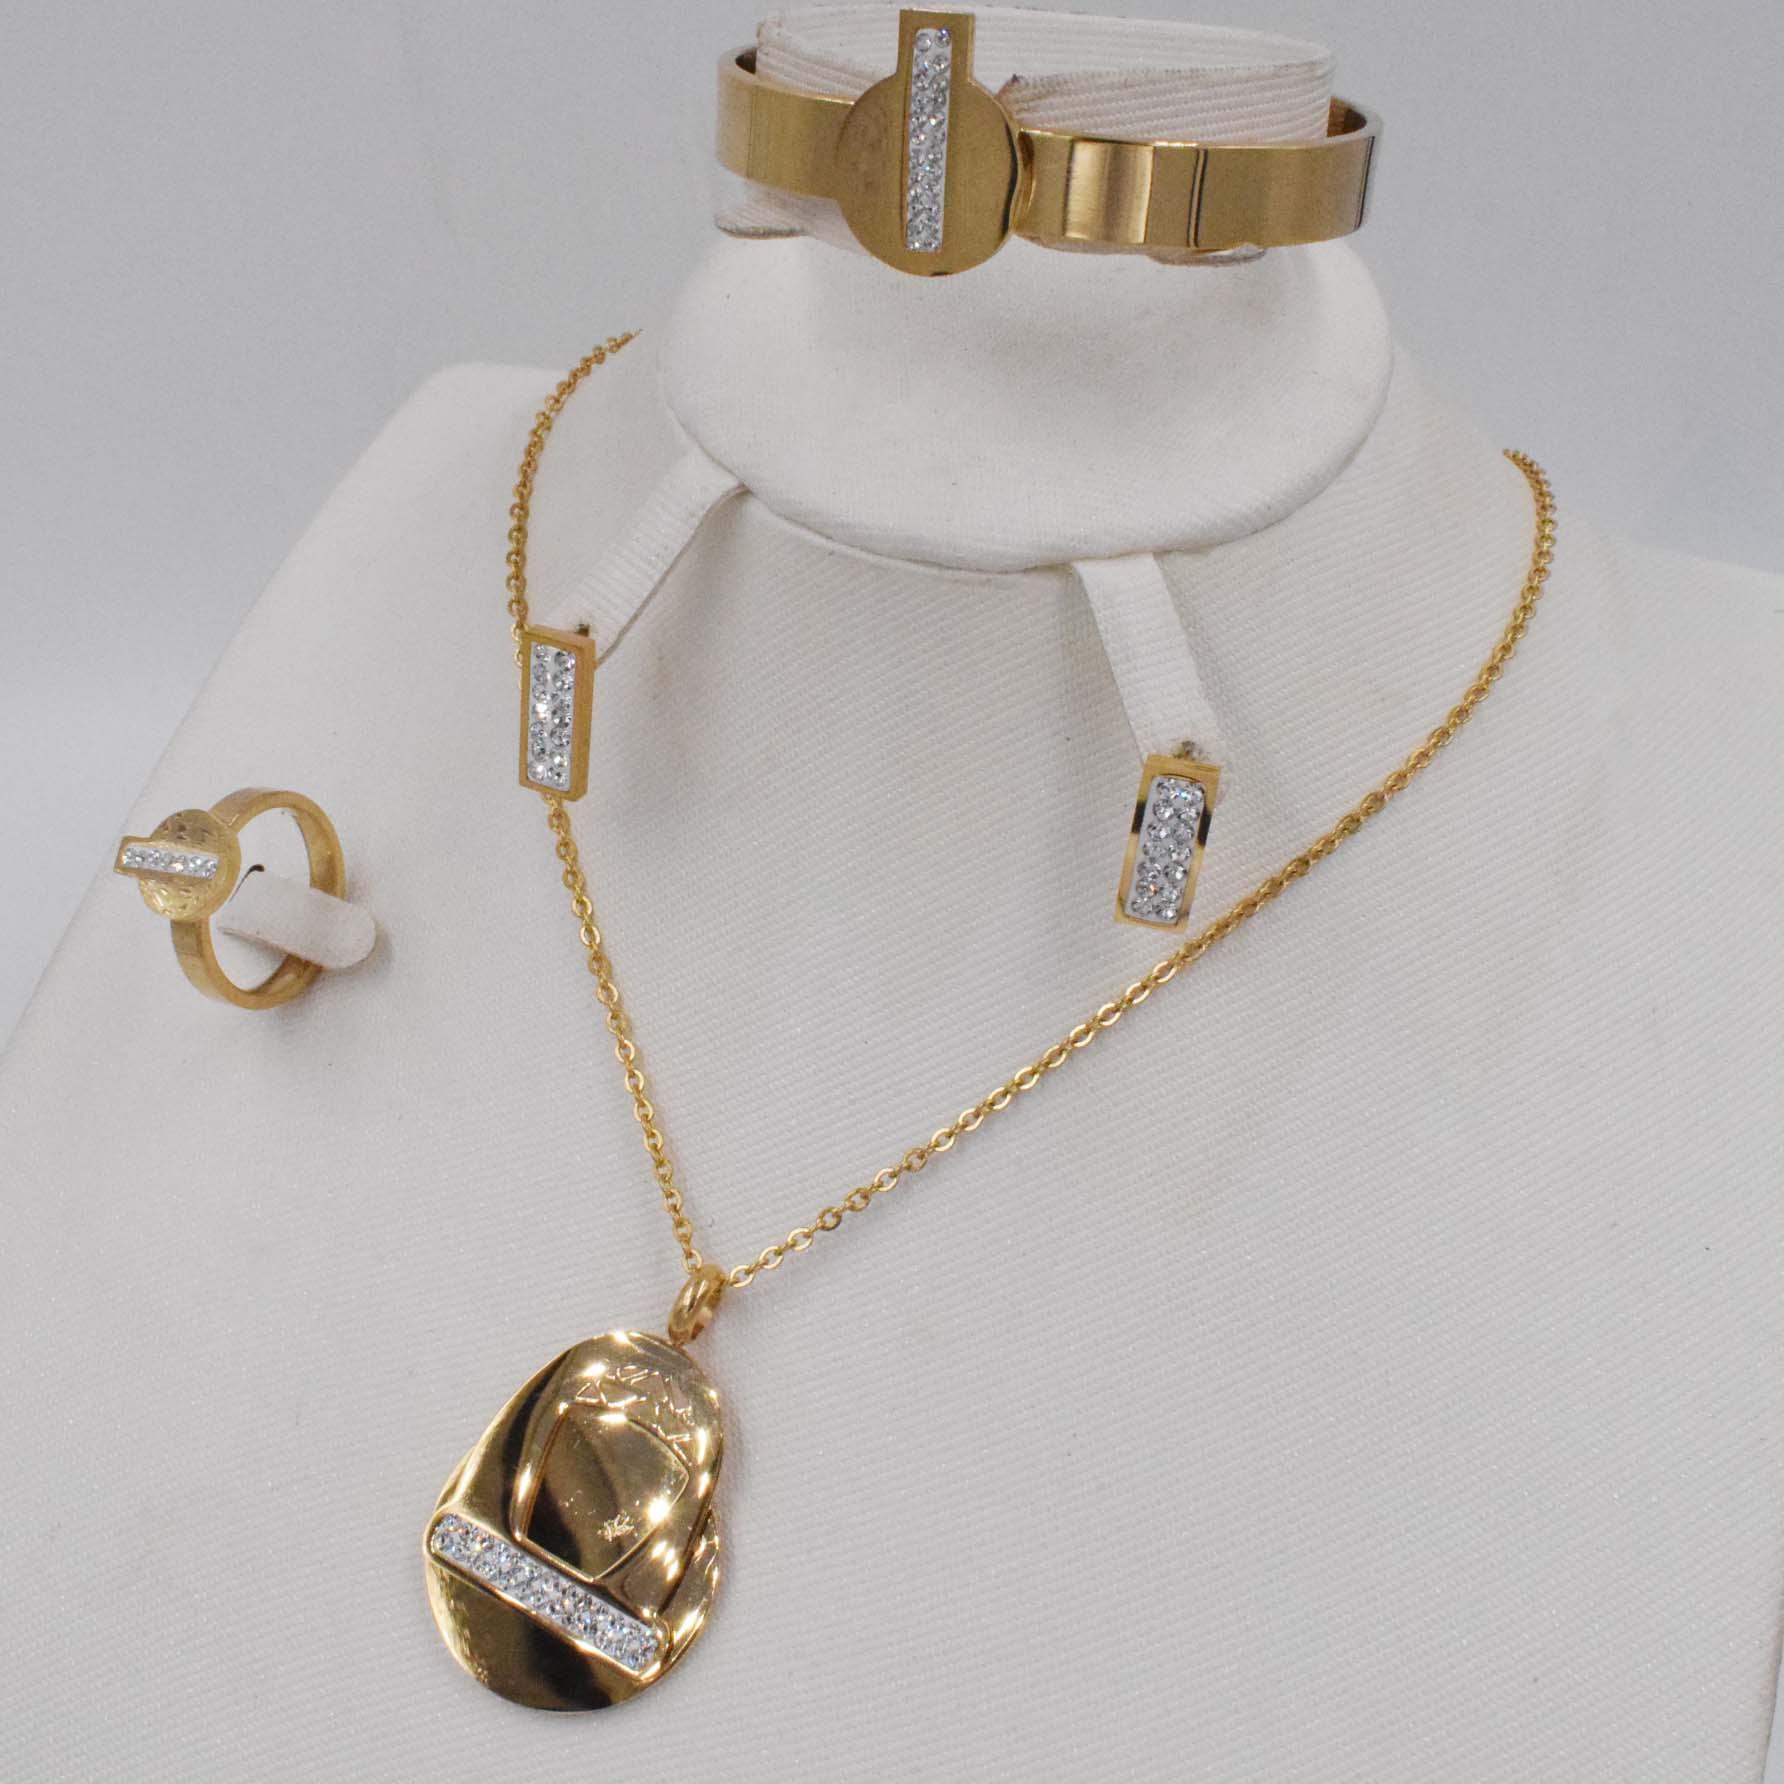 Изображение товара: Комплект золотых ювелирных украшений из Дубая, комплект эфиопских ювелирных украшений с кристаллами, стразы в африканском стиле